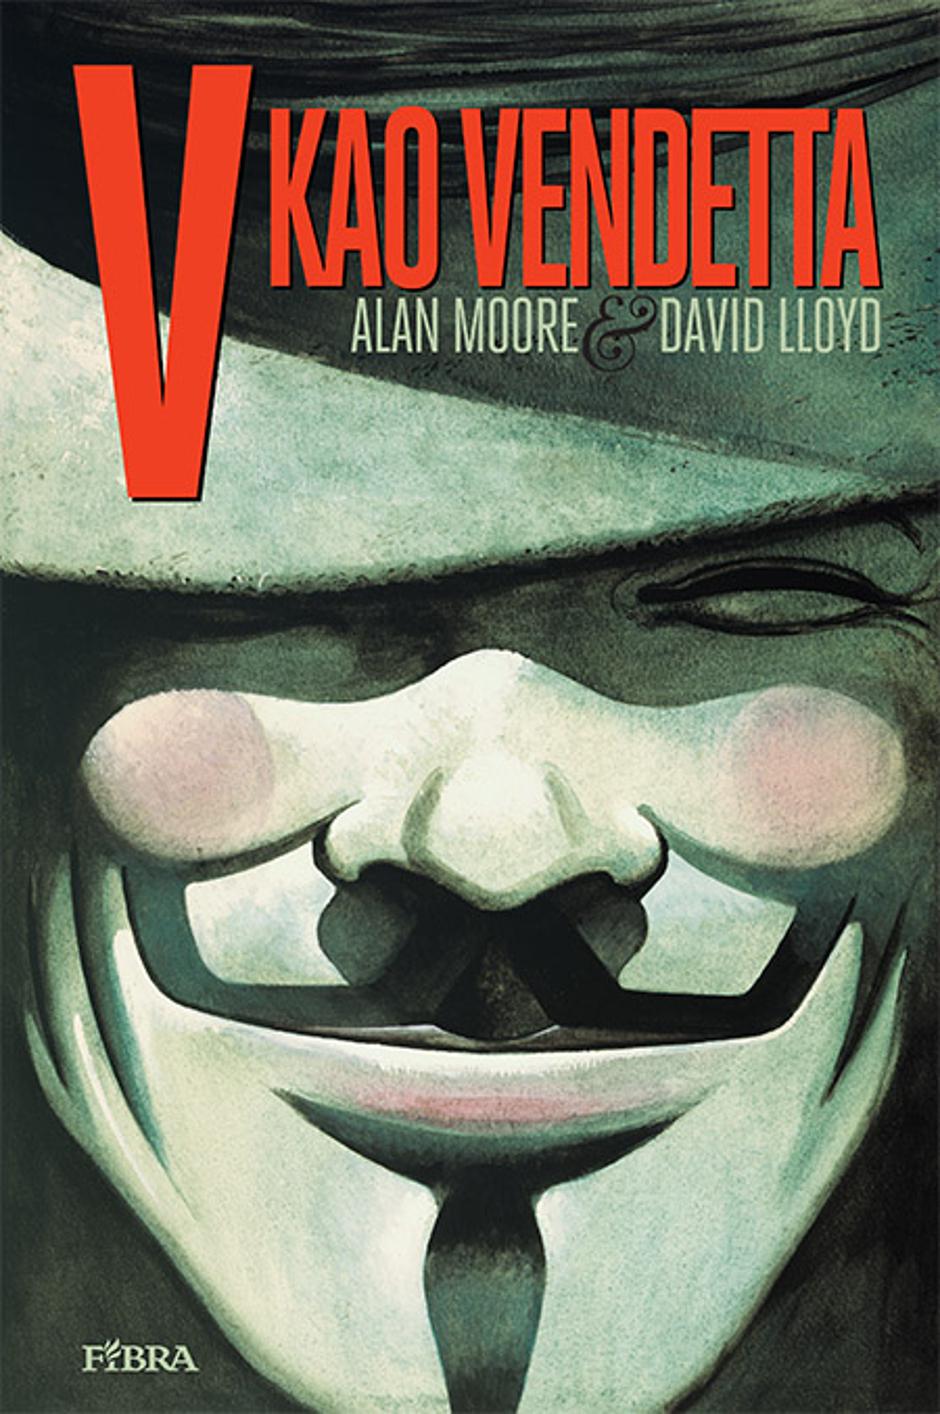 Strip "V kao Vendetta" u hrvatskom izdanju Fibre